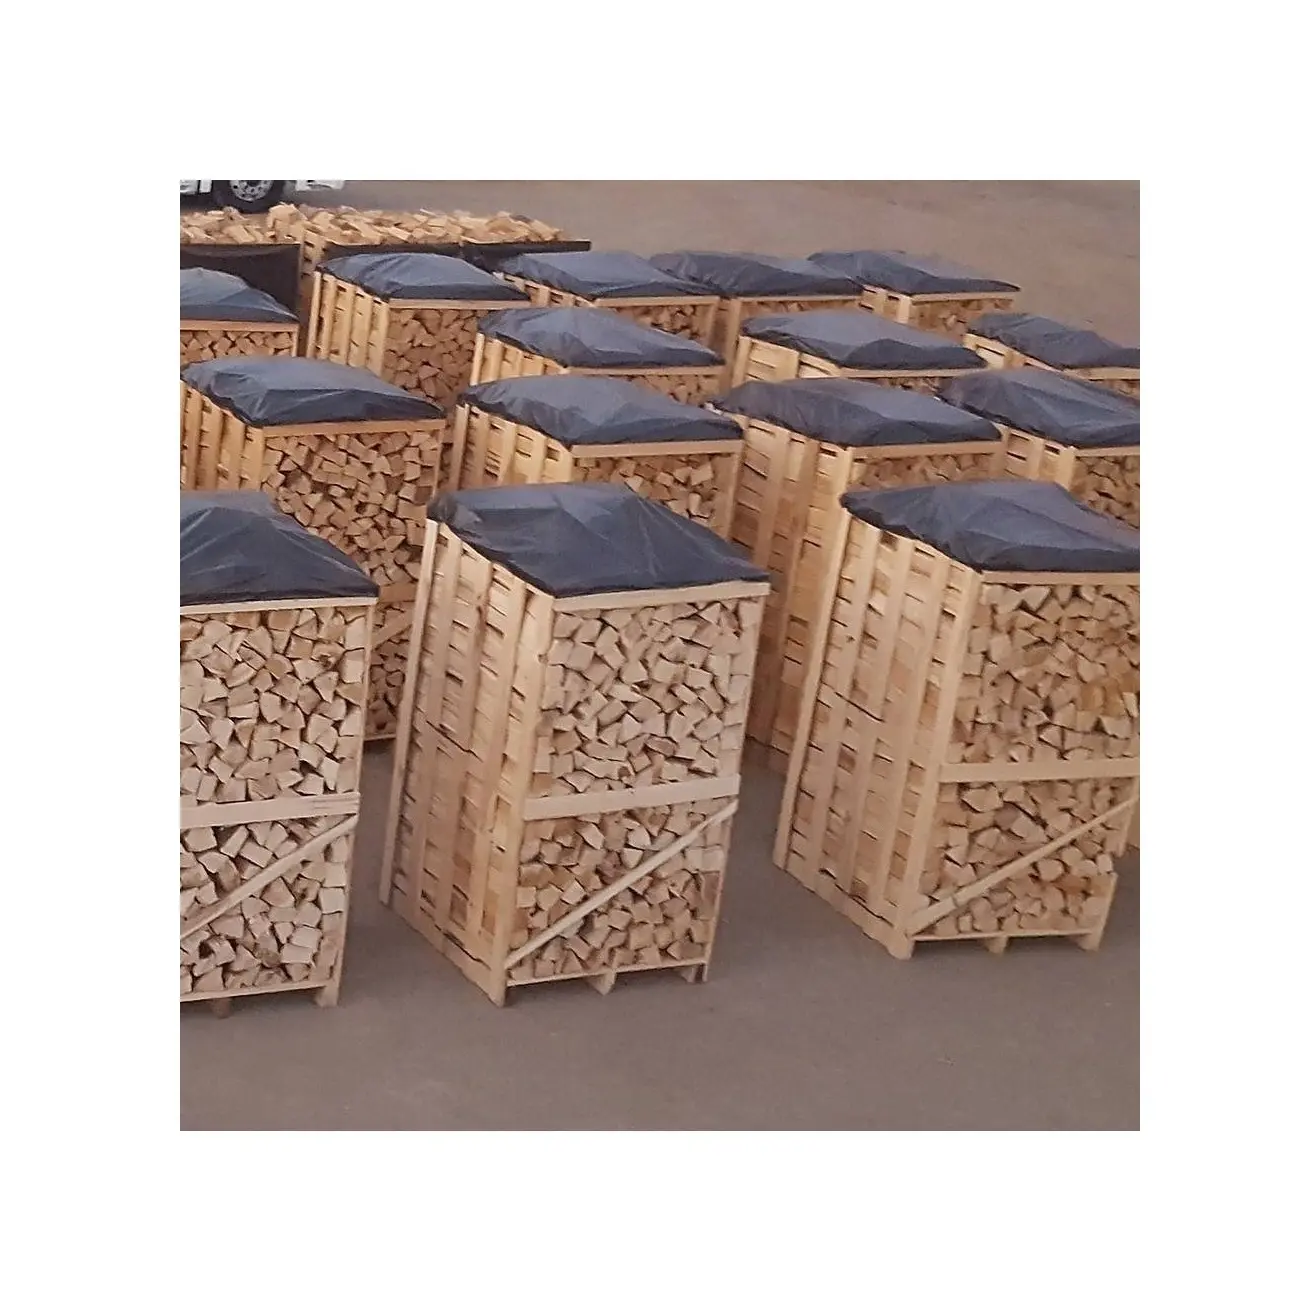 Beste Kwaliteit Hete Verkoopprijs Oven Gedroogd Brandhout | Eiken En Beuken Brandhout Logs